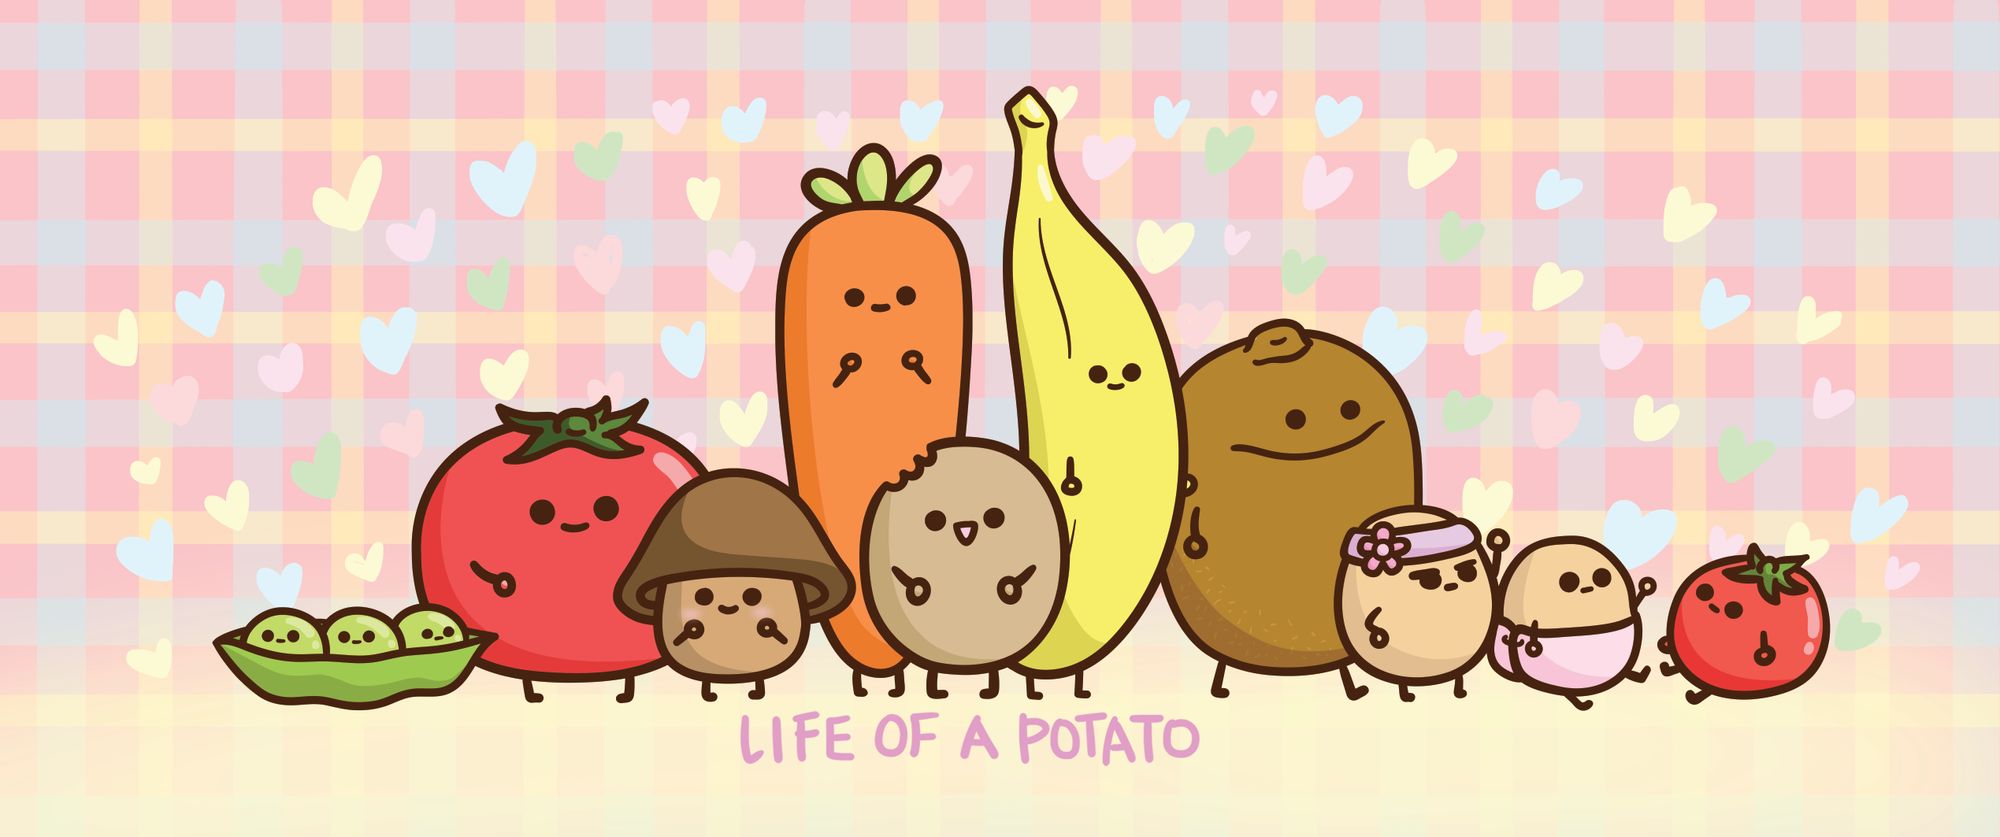 cute cartoon potatoes